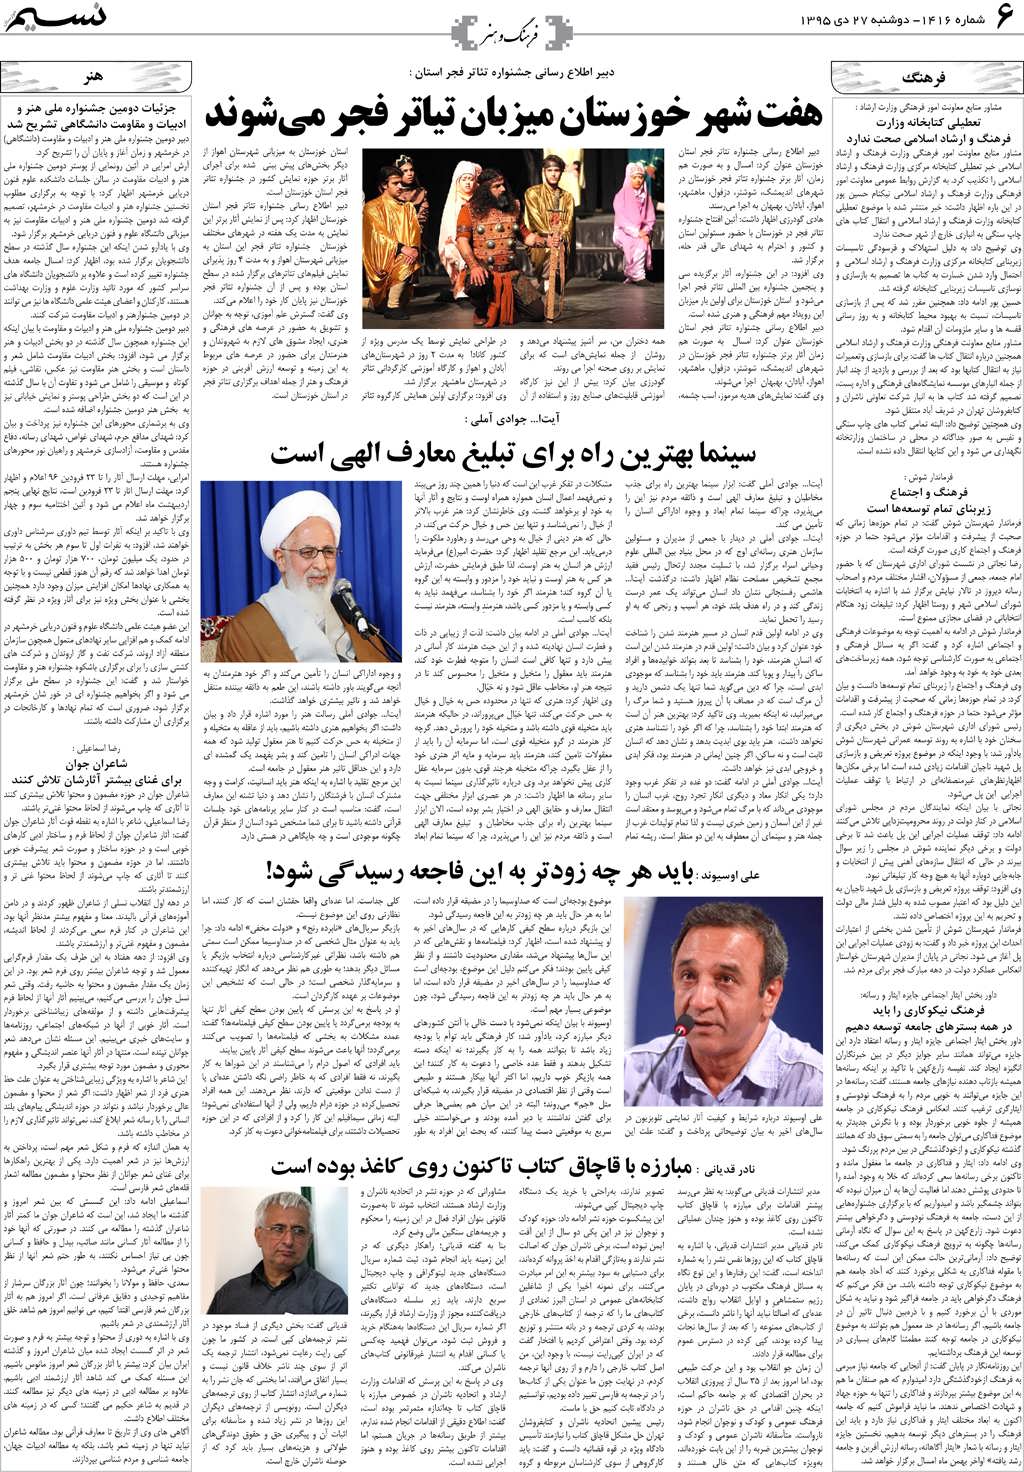 صفحه فرهنگ و هنر روزنامه نسیم شماره 1416